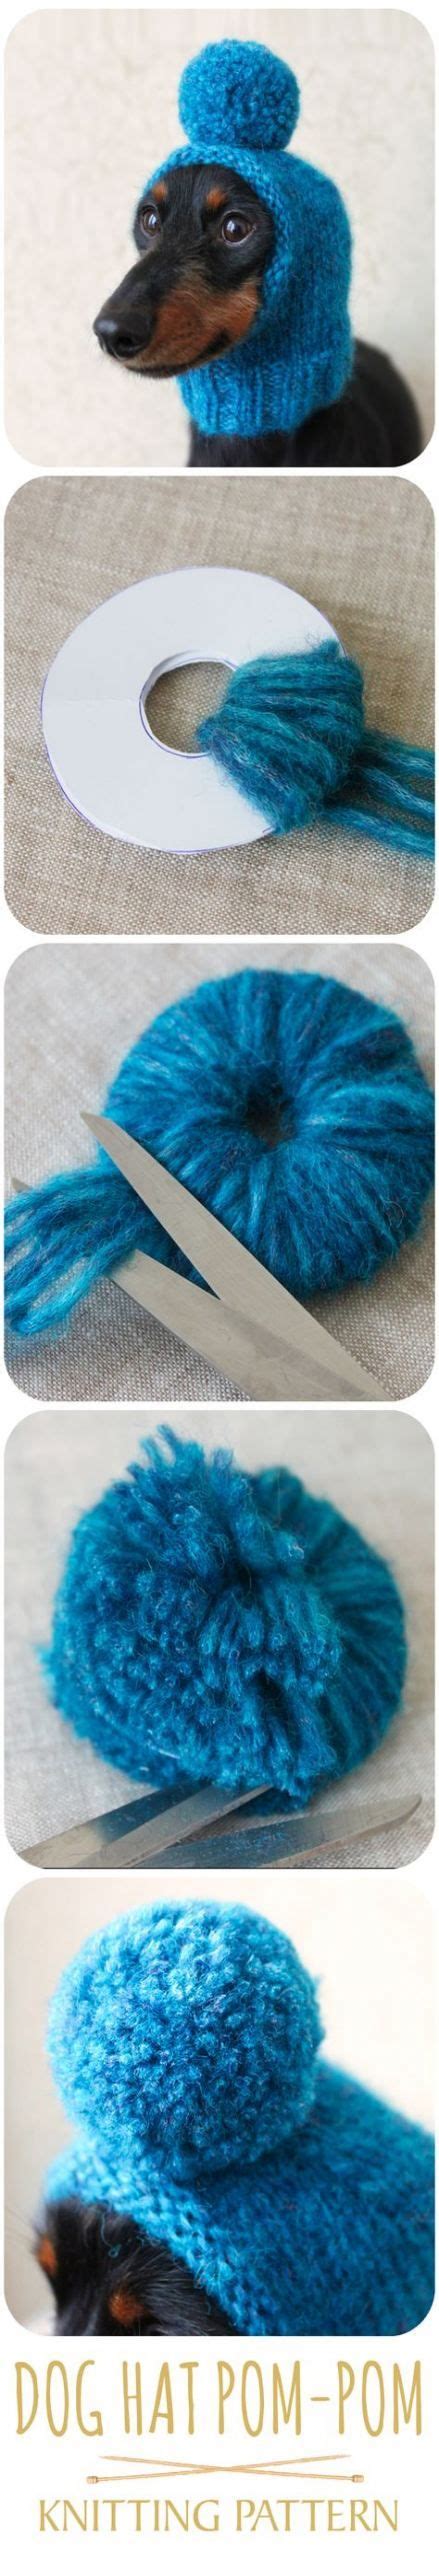 Diy Dog Hat Funny 29 Ideas Diy Dog Sweater Loom Knitting Patterns